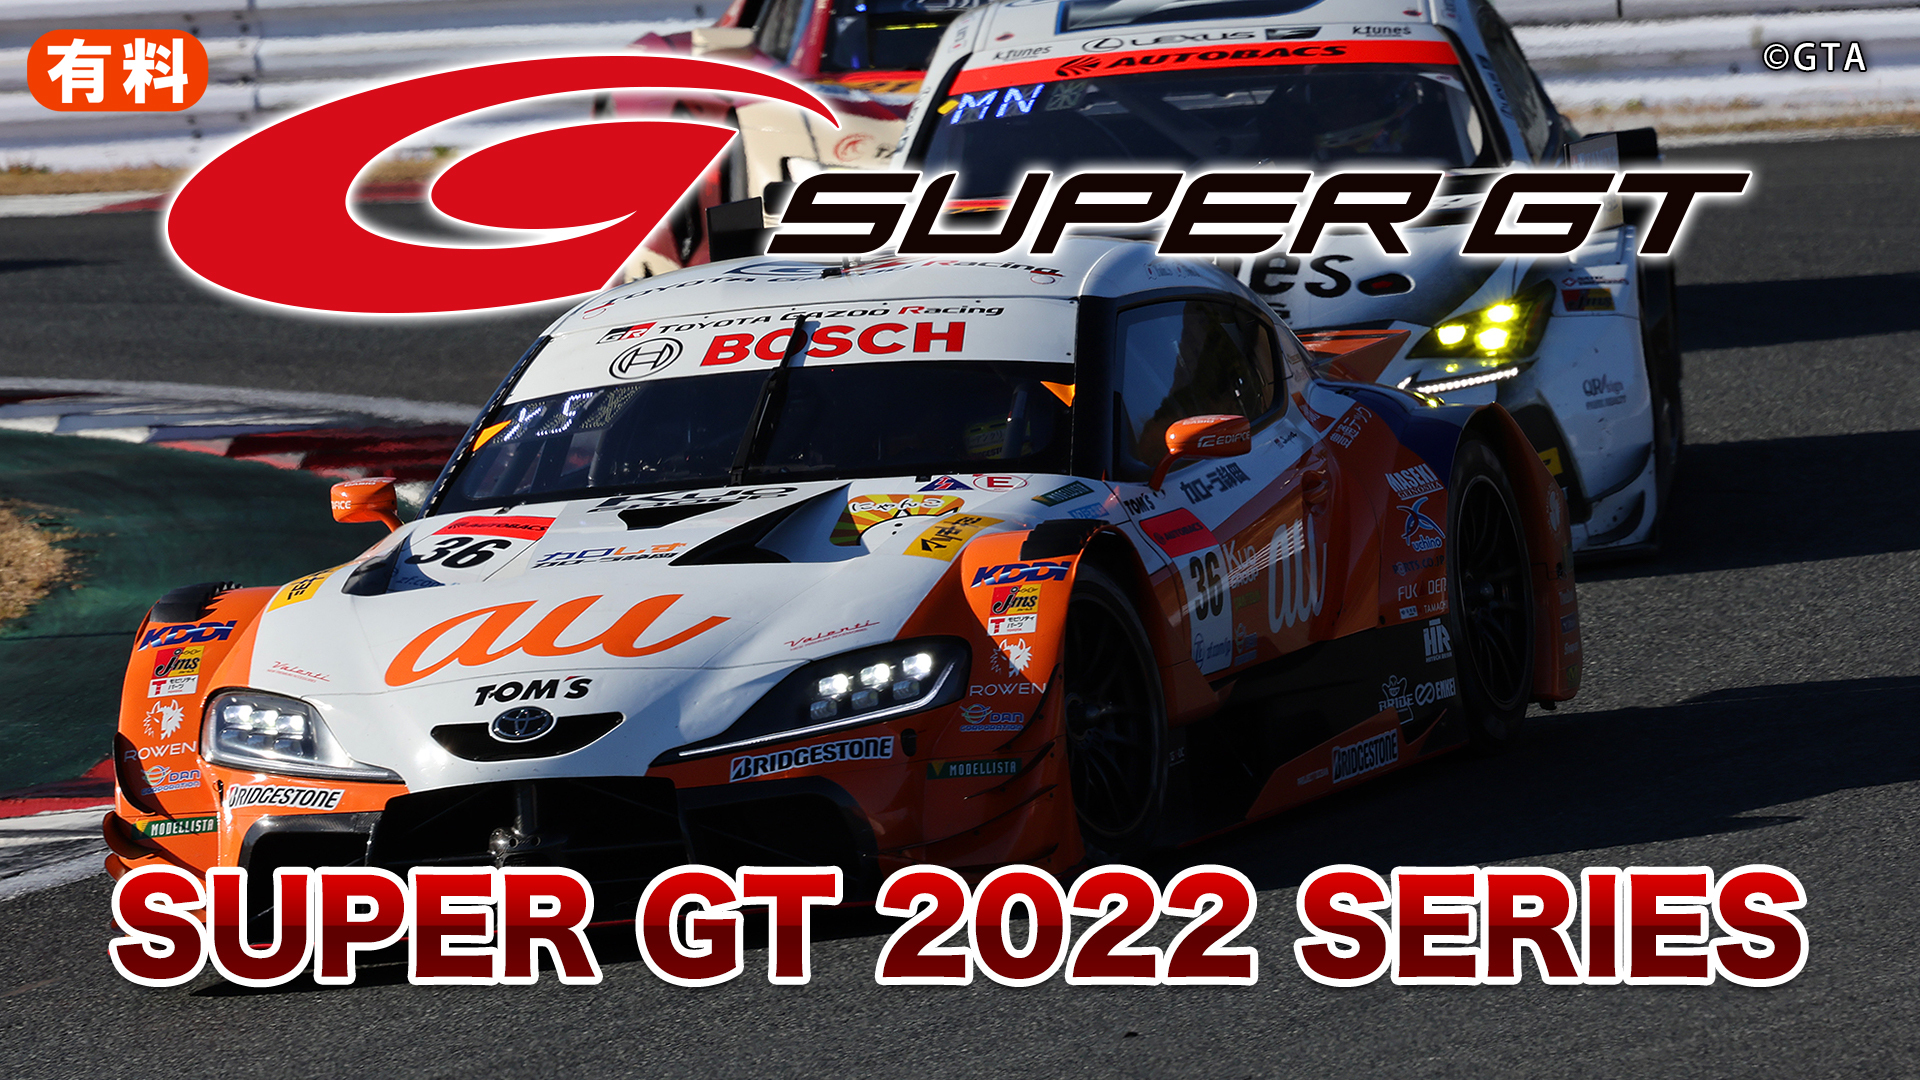 SUPER GT 2022